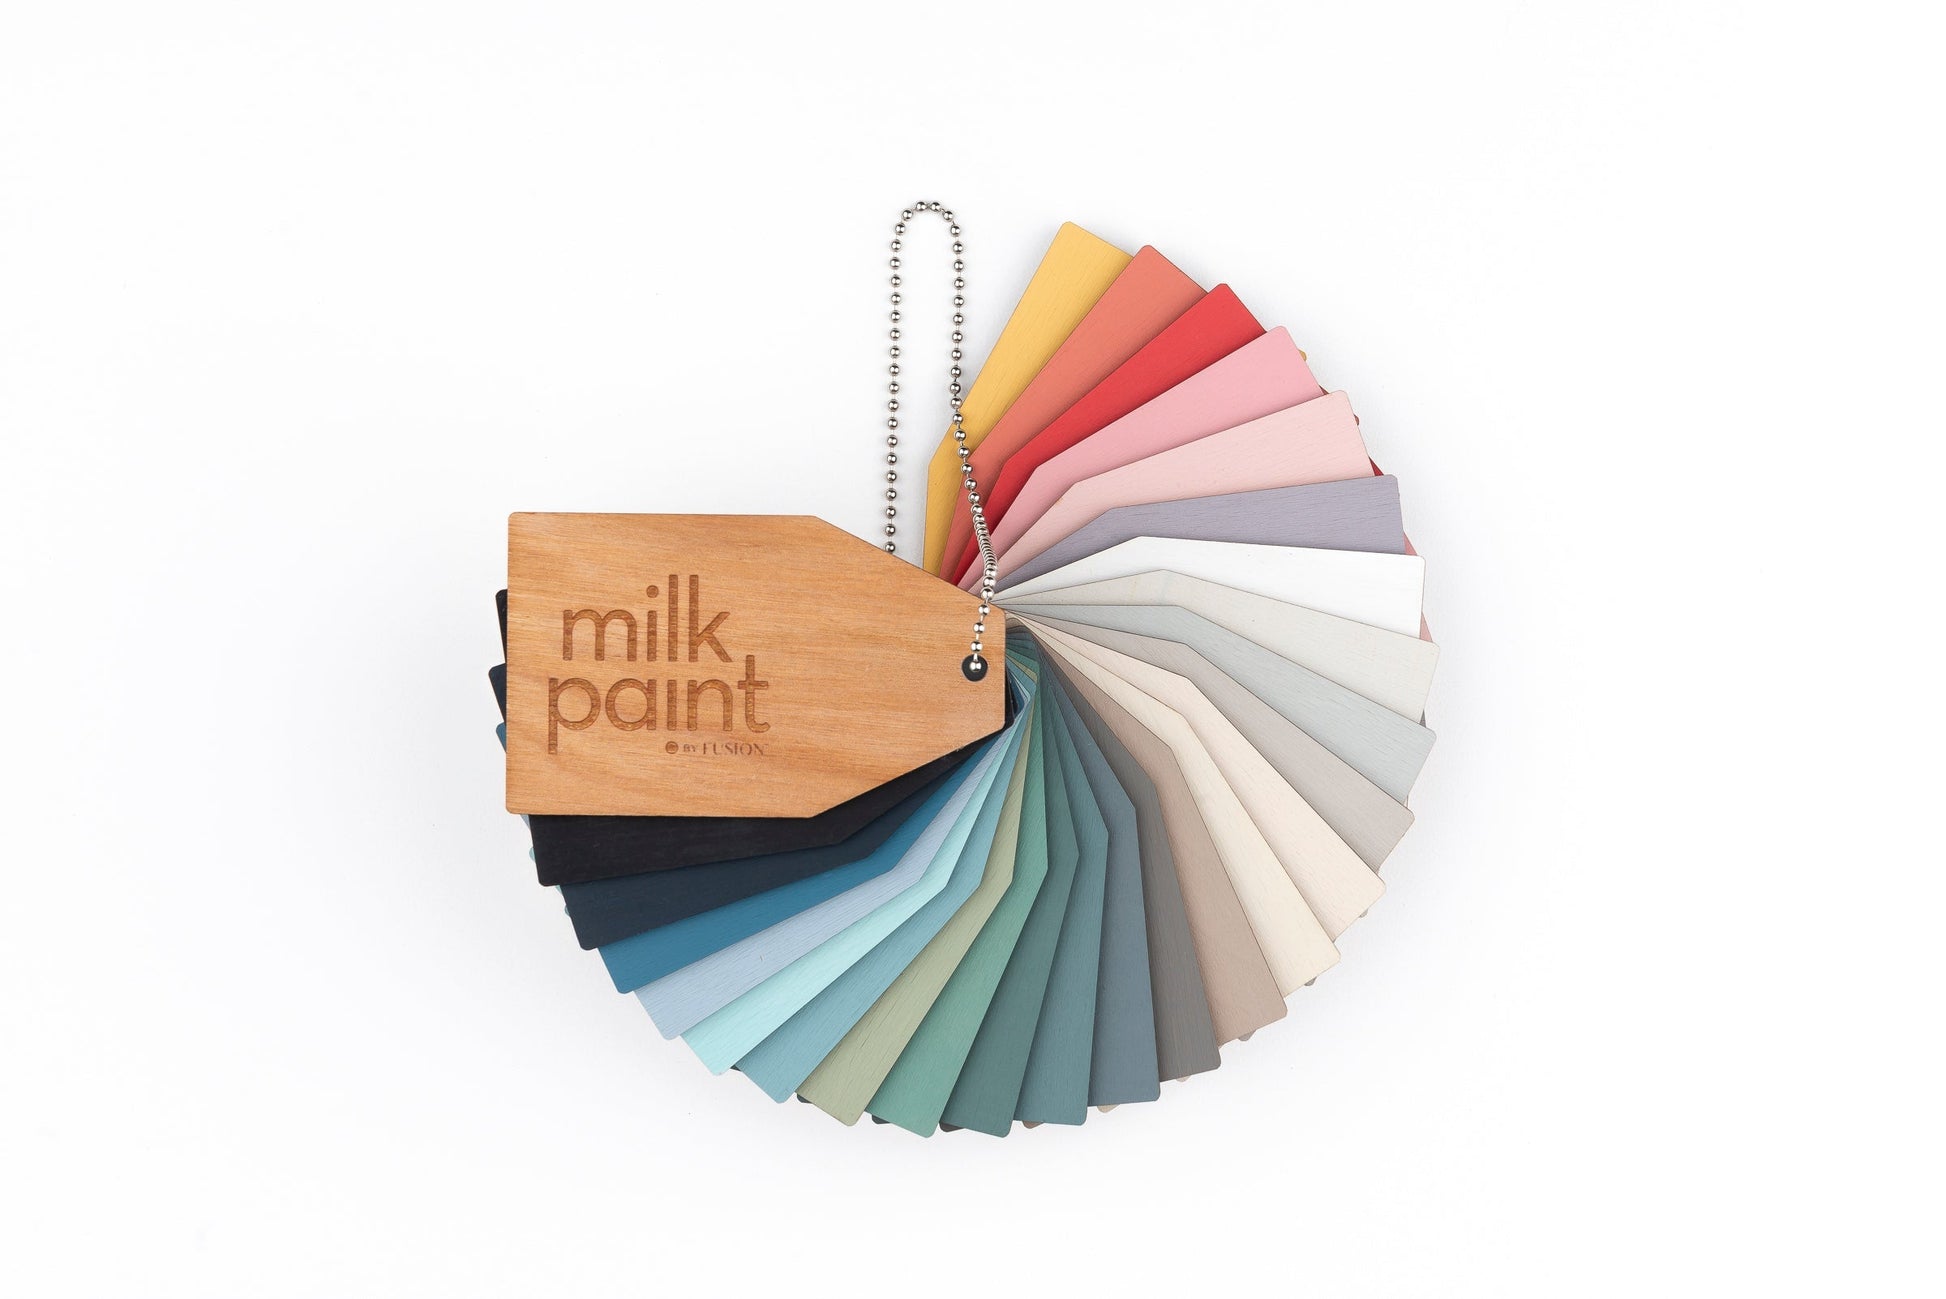 Milk Paint Value Kit - 3 Large Bags – Fusion Mineral Paint